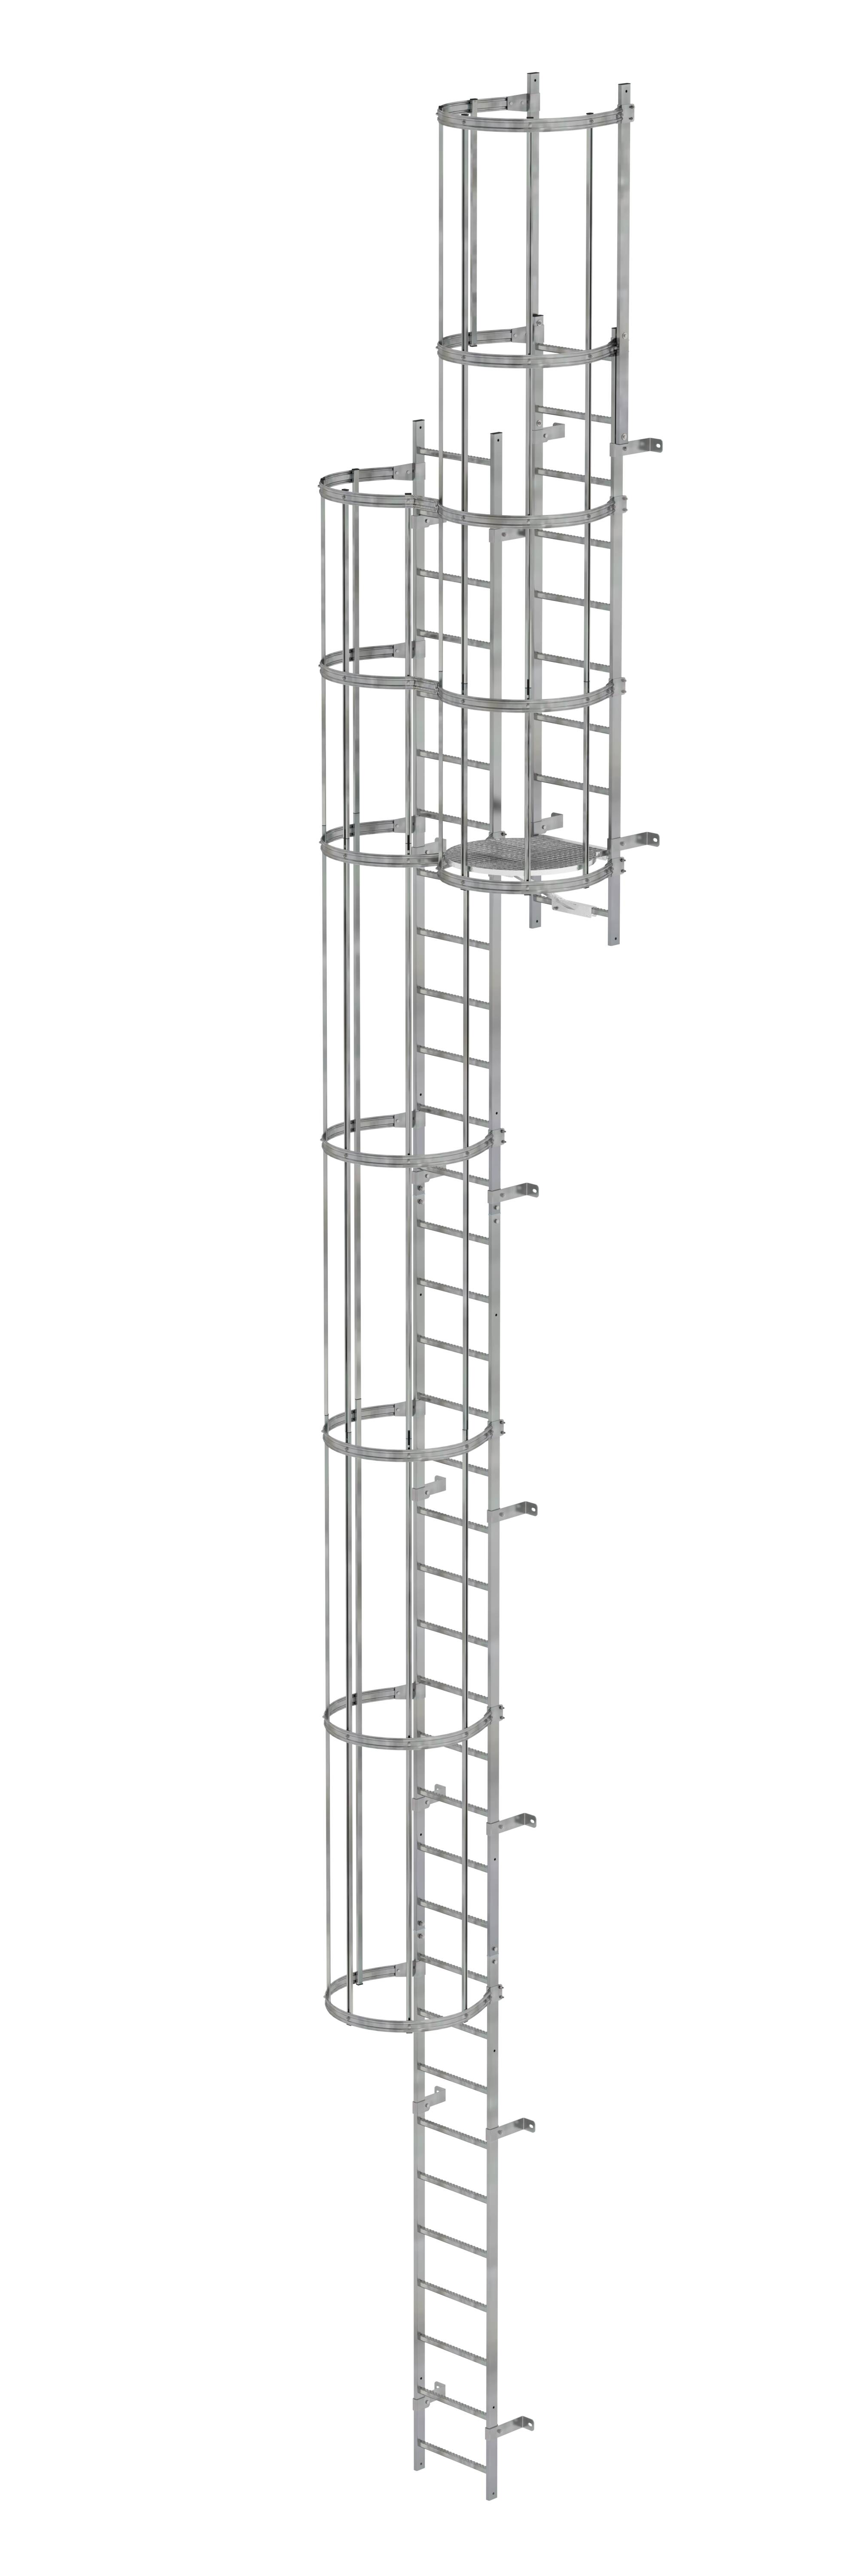 MUNK Mehrzügige Steigleiter mit Rückenschutz (Bau) Stahl verzinkt  